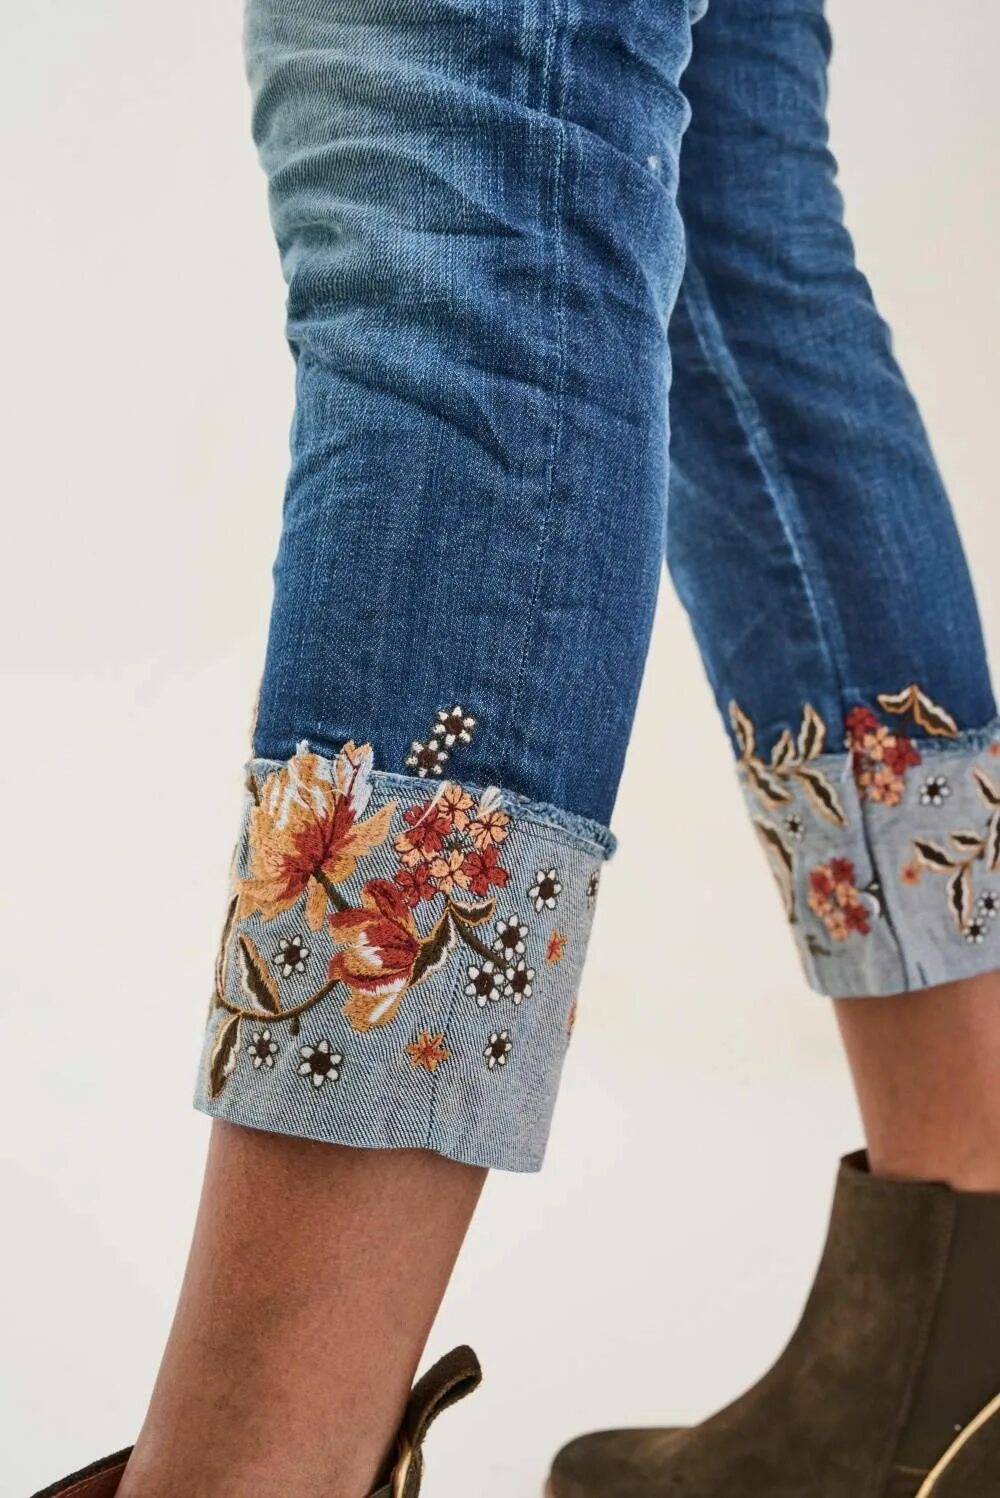 Джинсы декорированные. Джинсы с вышивкой. Джинсы с вышивкой женские. Украсить джинсы. Как украсить джинсы